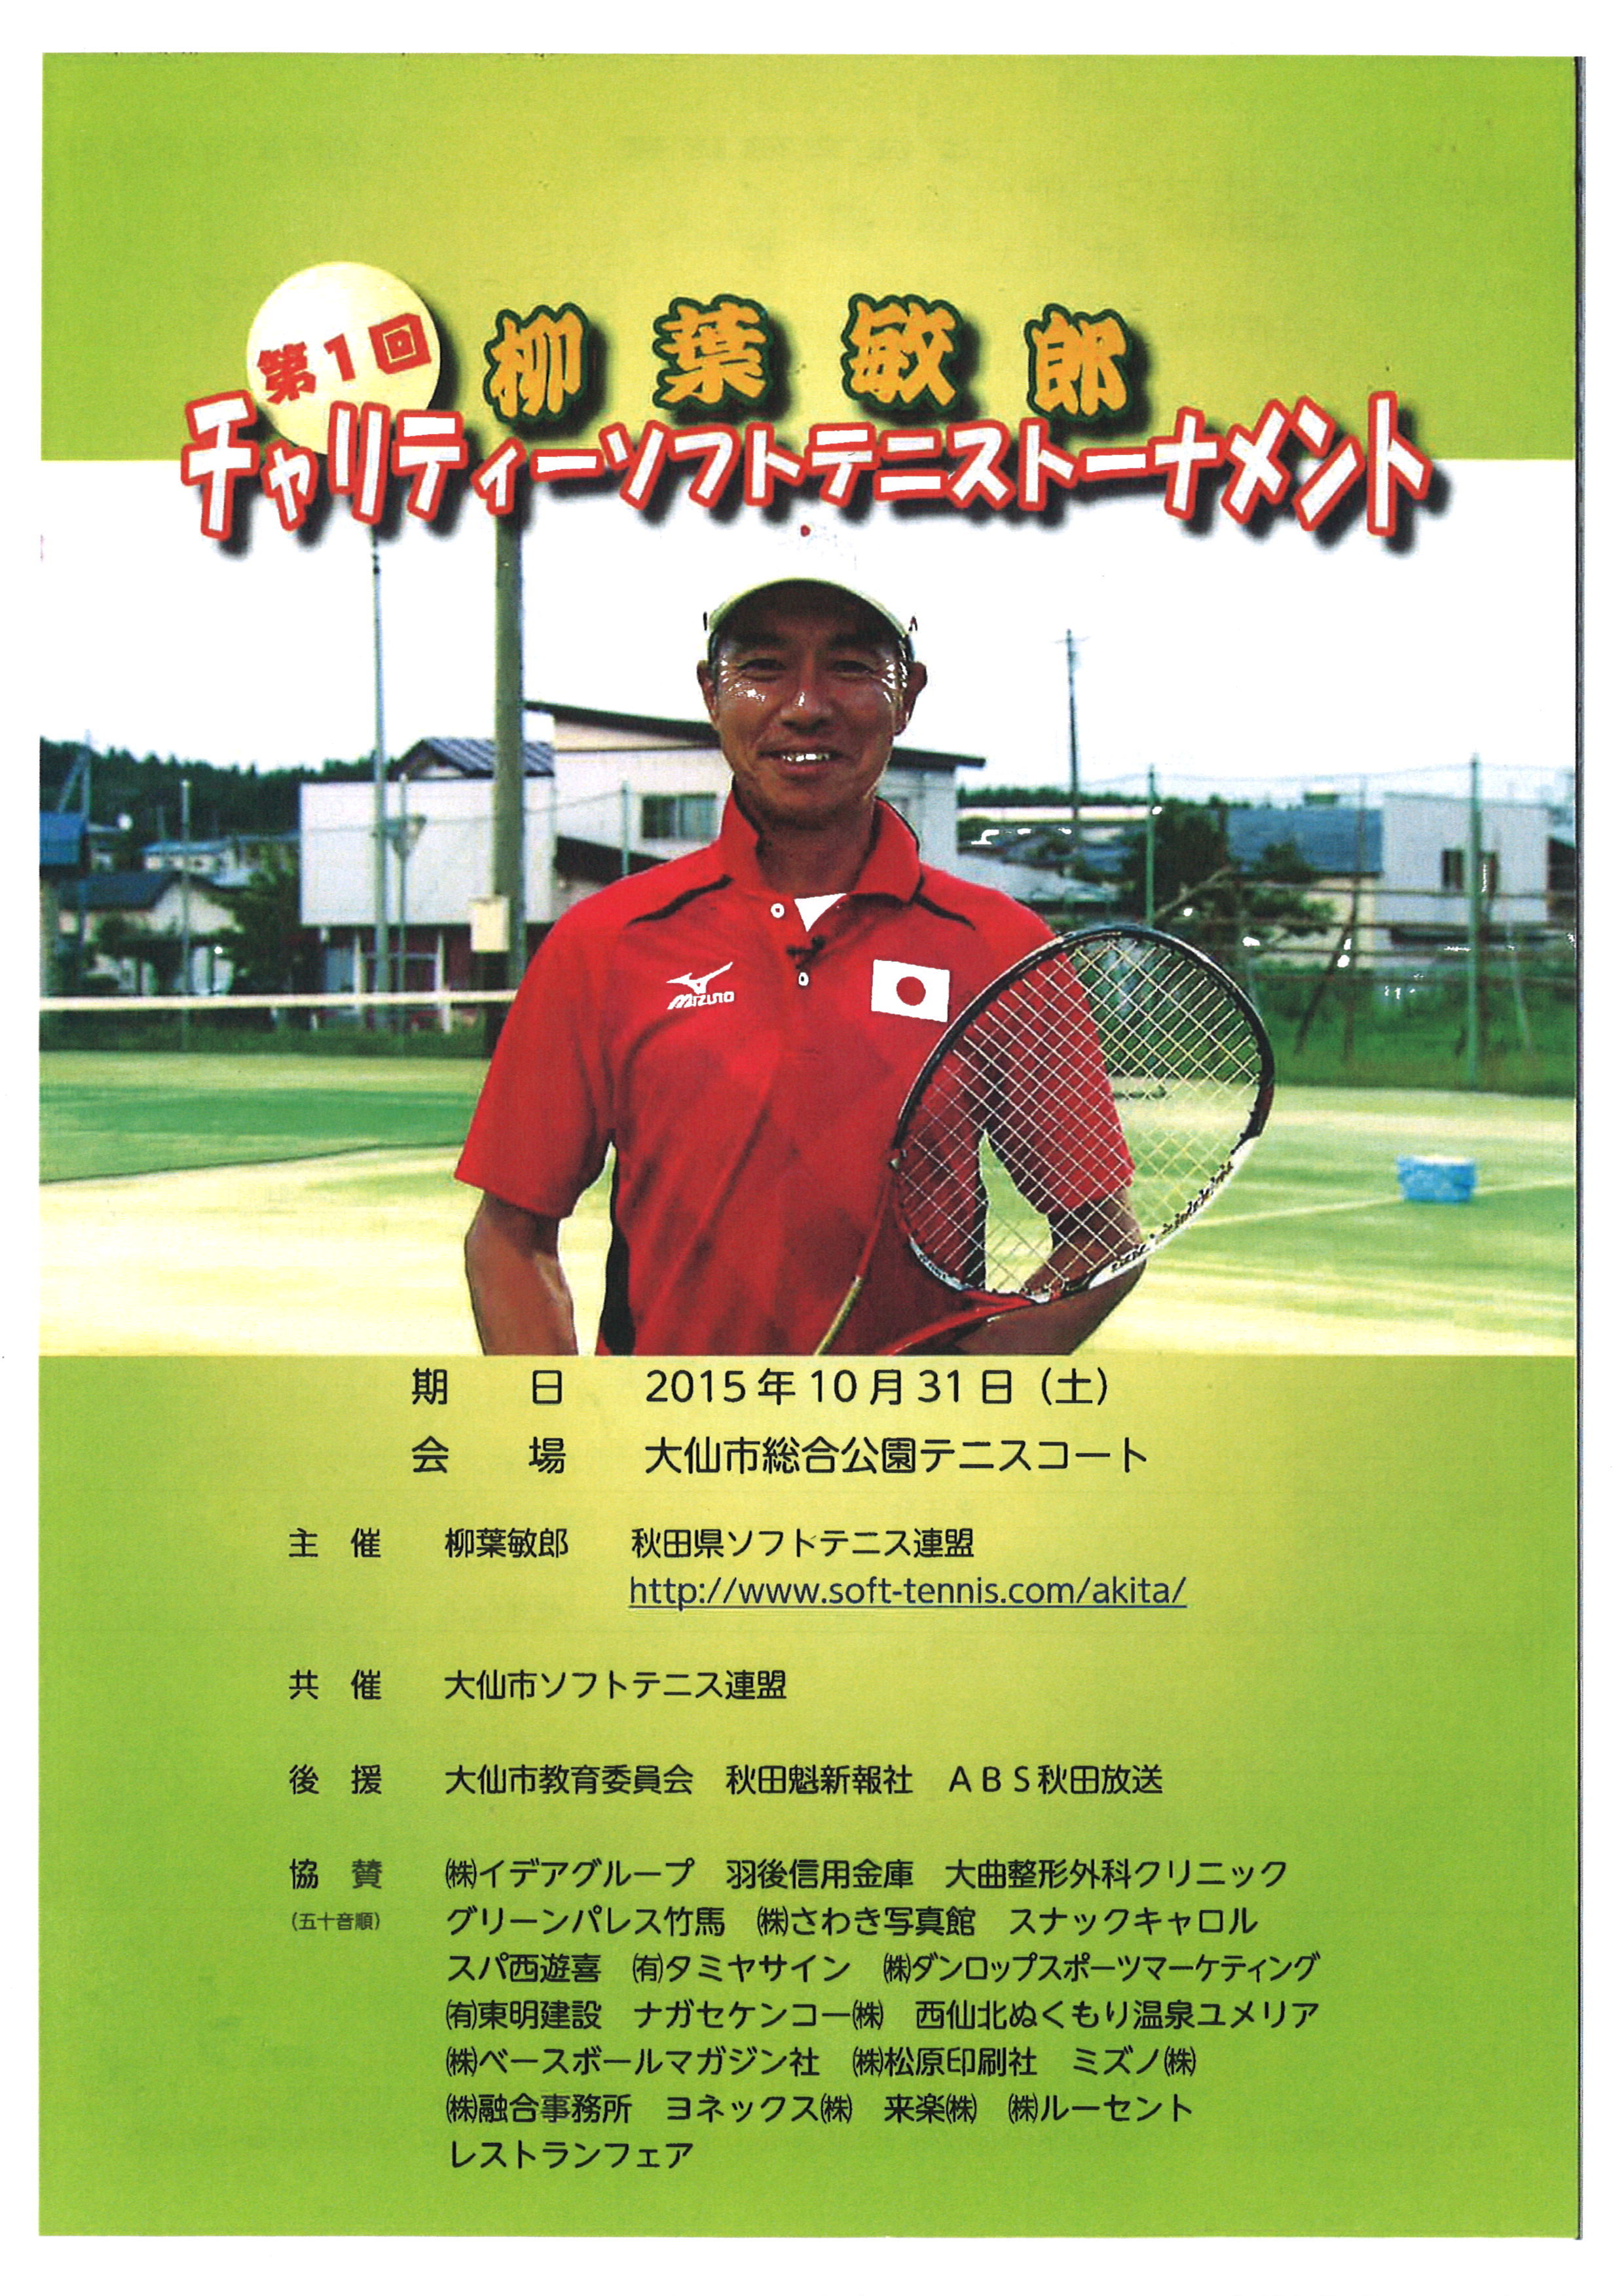 第1回柳葉敏郎チャリティーソフトテニストーナメント